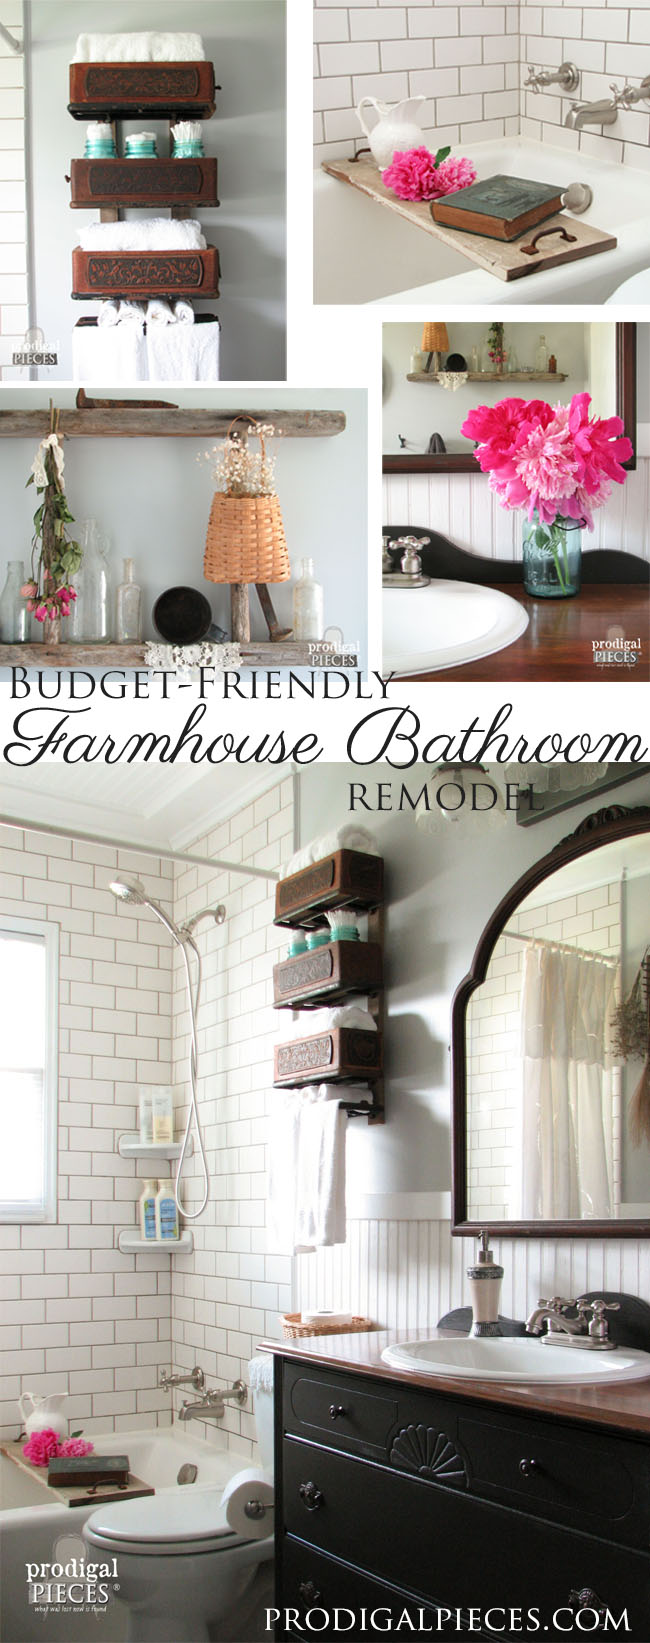 Budget-Friendly DIY Farmhouse Style Bathroom Makeover by Prodigal Pieces | prodigalpieces.com #prodigalpieces #farmhouse #bathroom #remodel #diy #home #homedecor